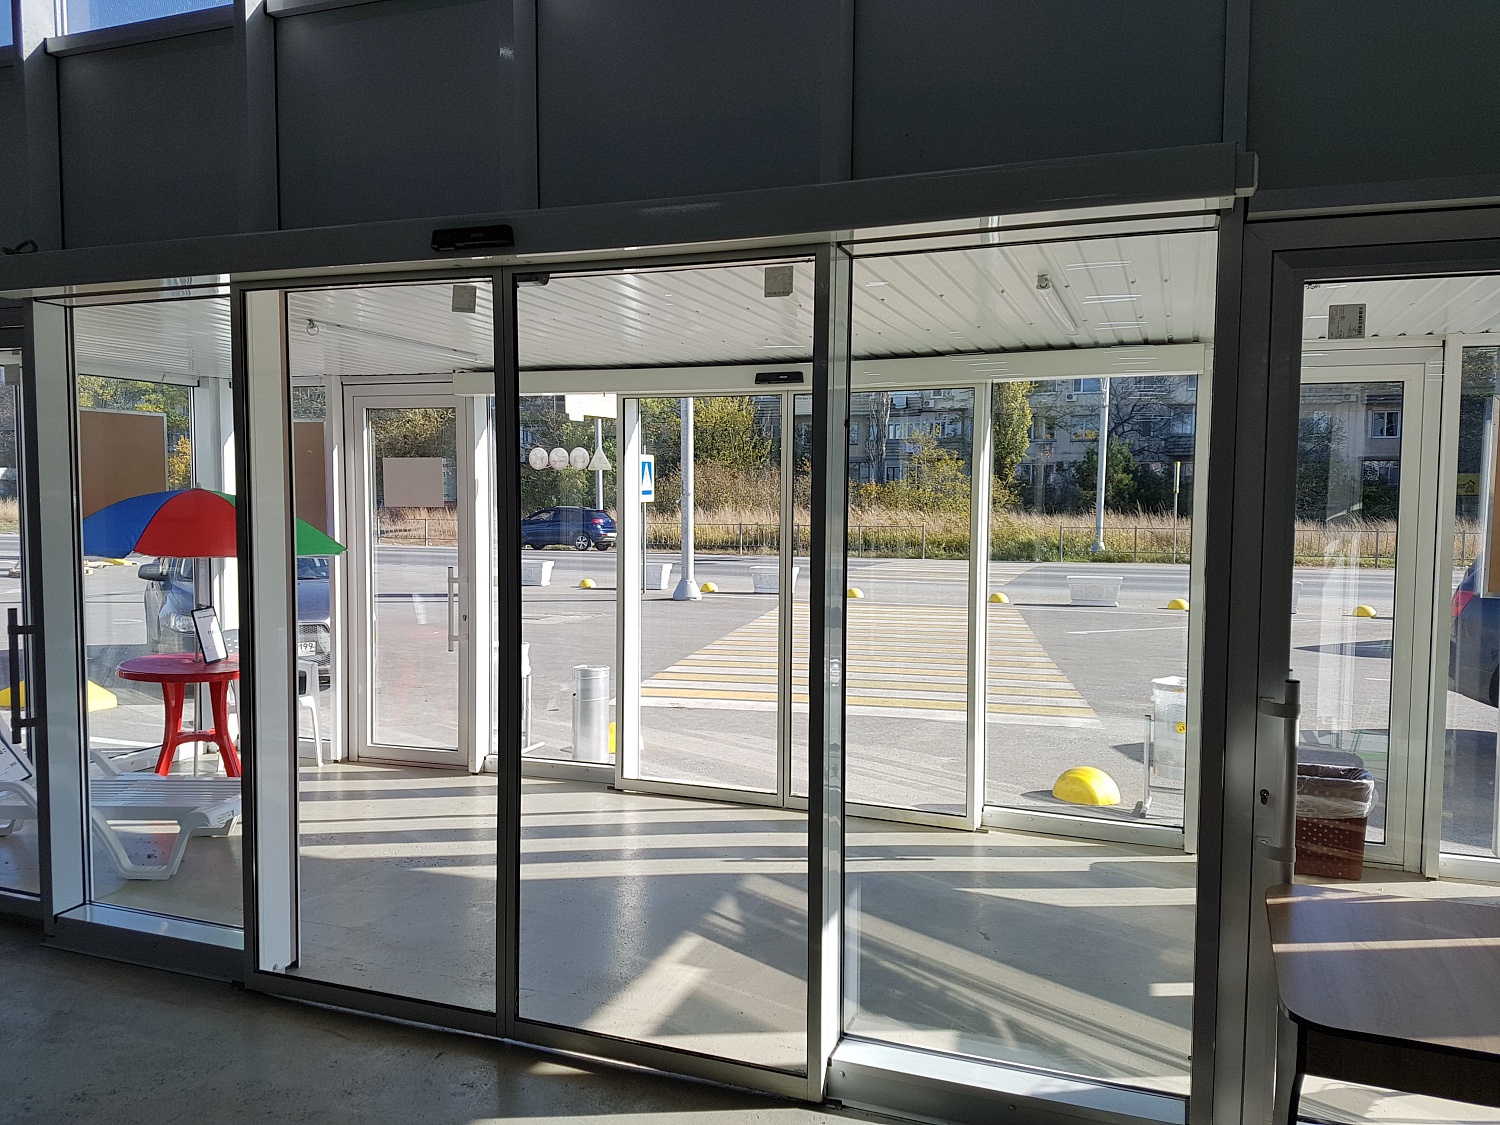 Заказать установку автоматических дверей в Ялте. Монтаж выполняется командой профессионалов с опытом работы более 9 лет. 